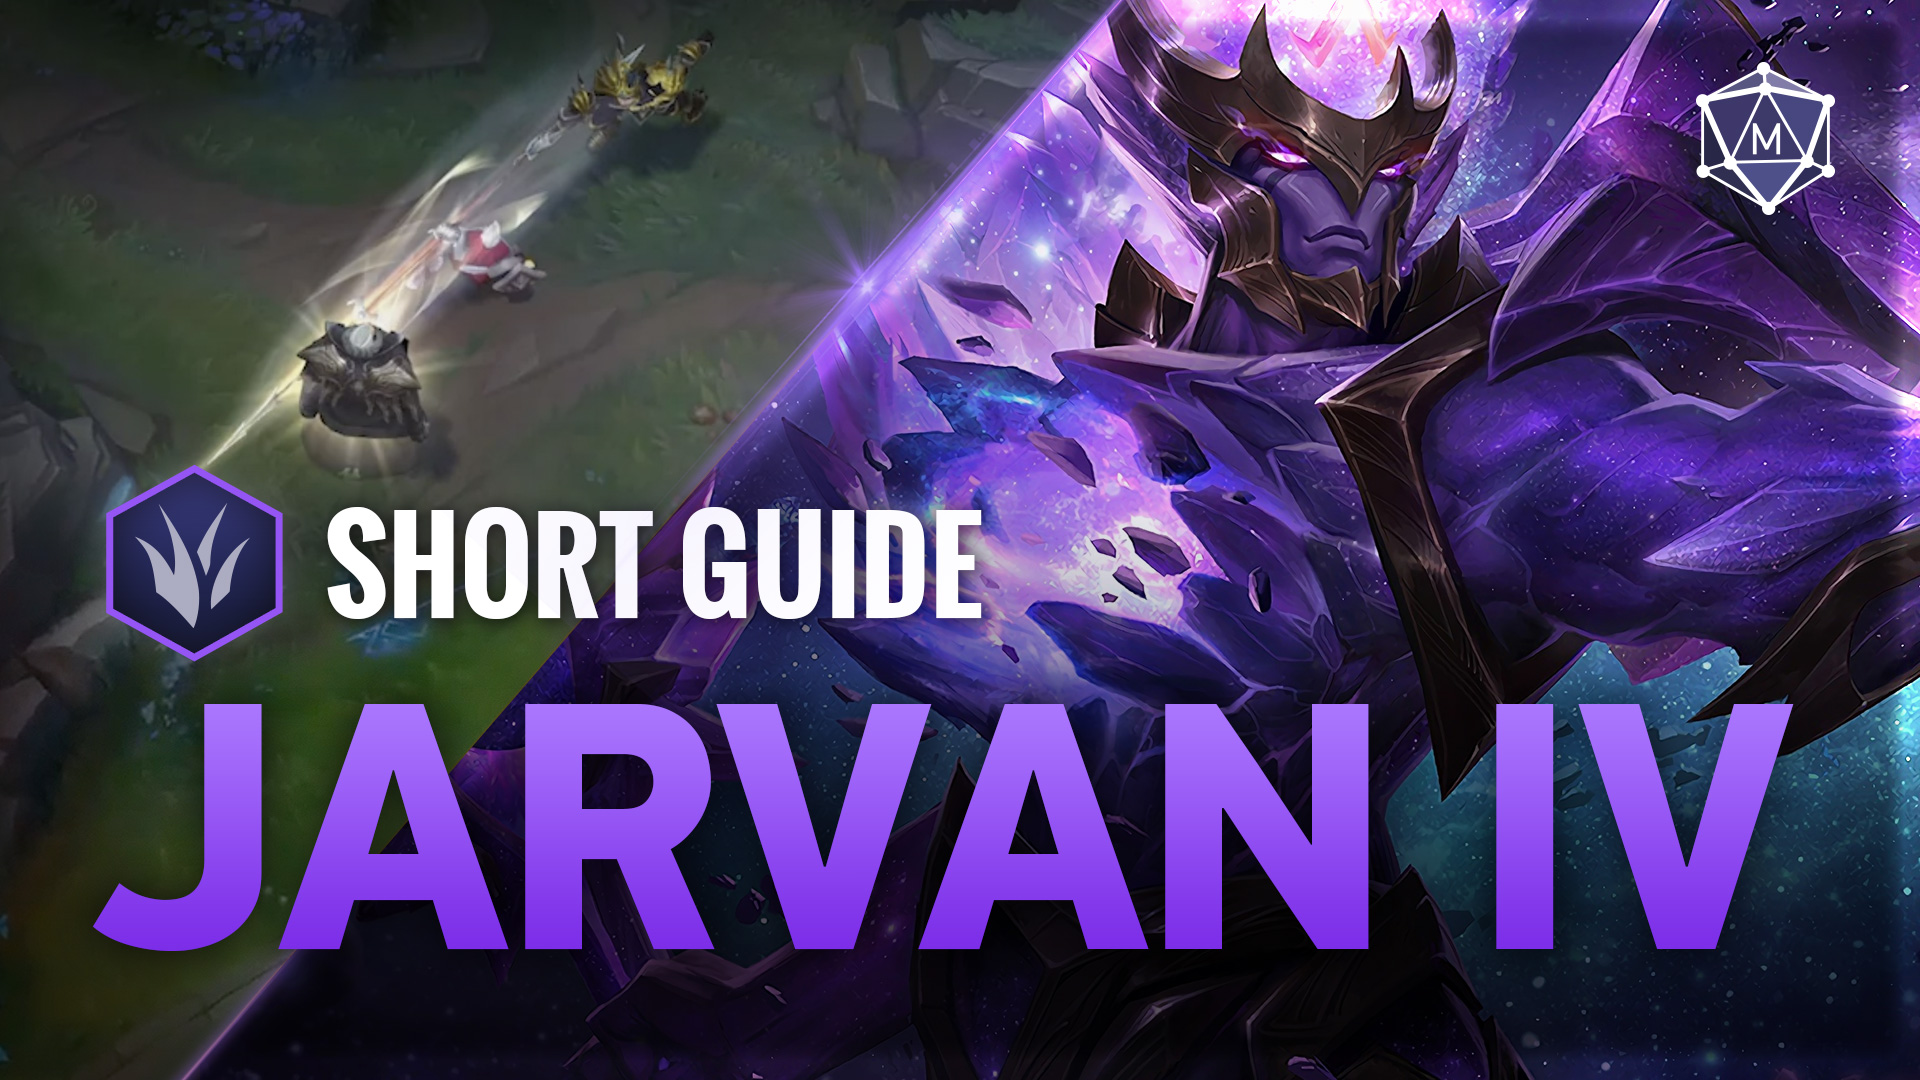 Jarvan IV expert guide